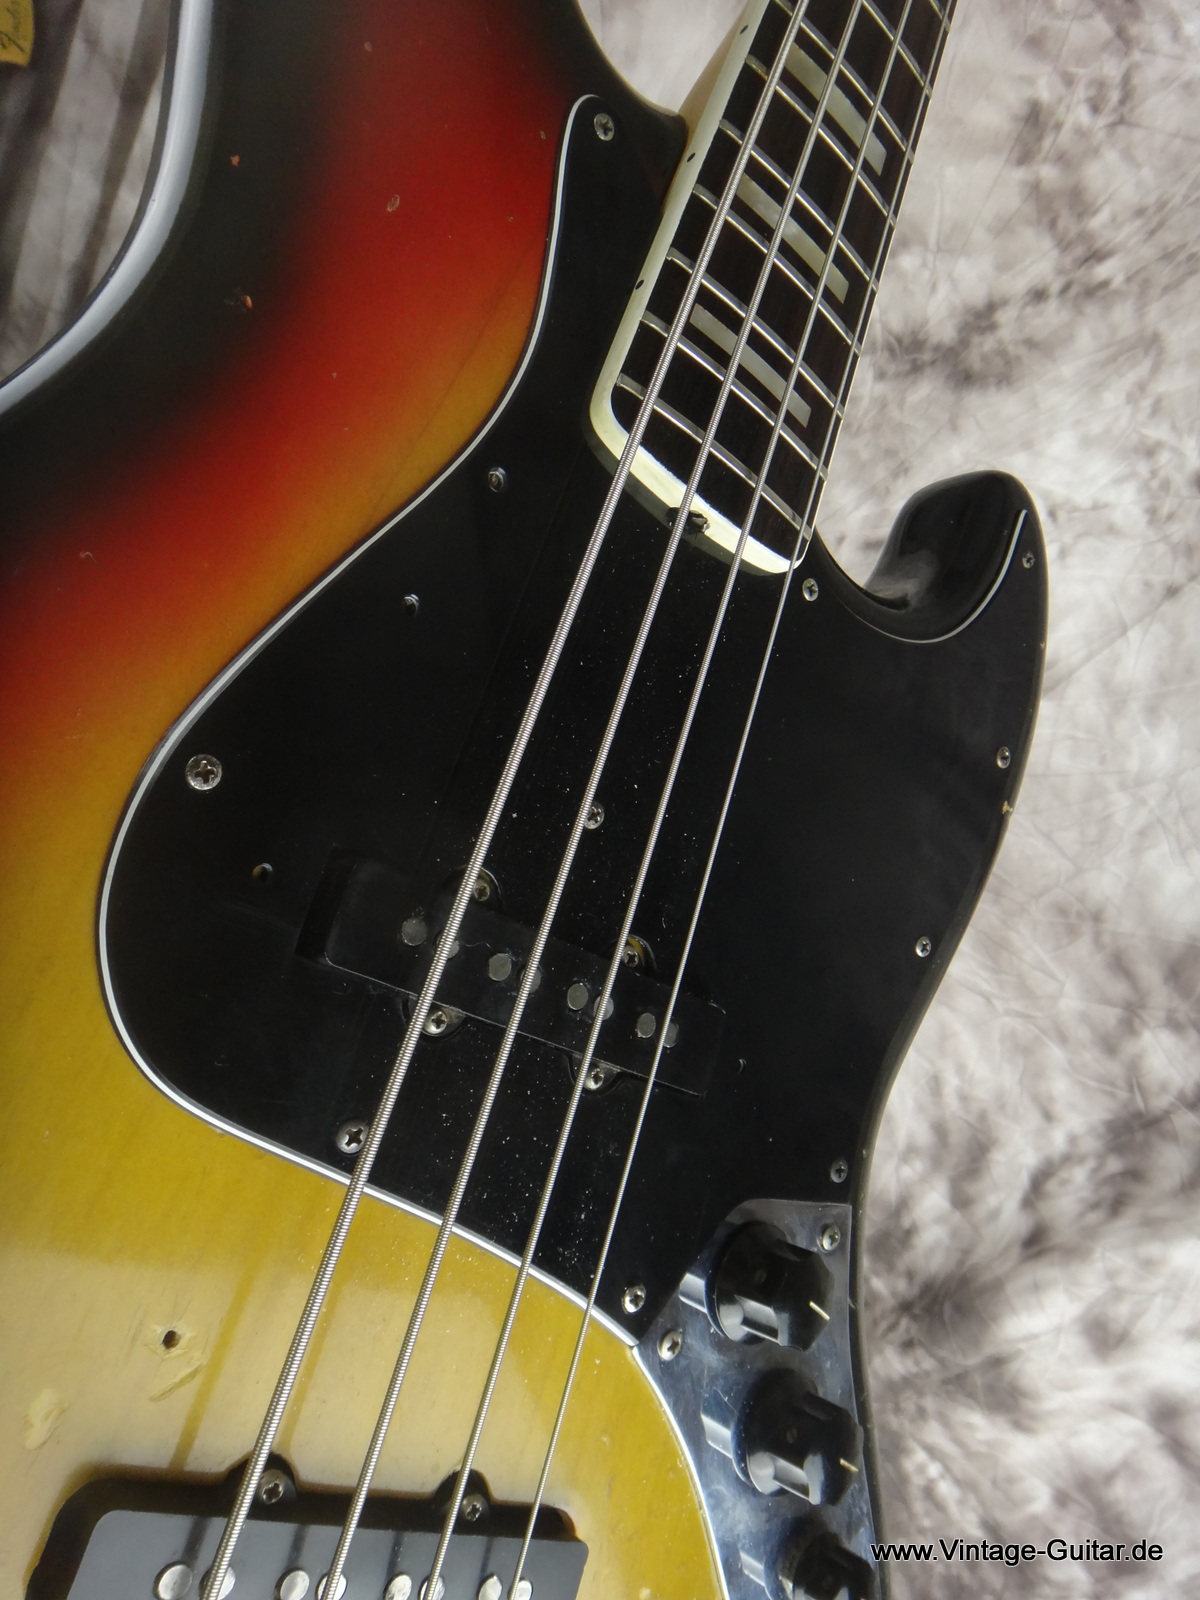 Fender_Jazz-Bass_1974_sunburst-alder-body-010.JPG